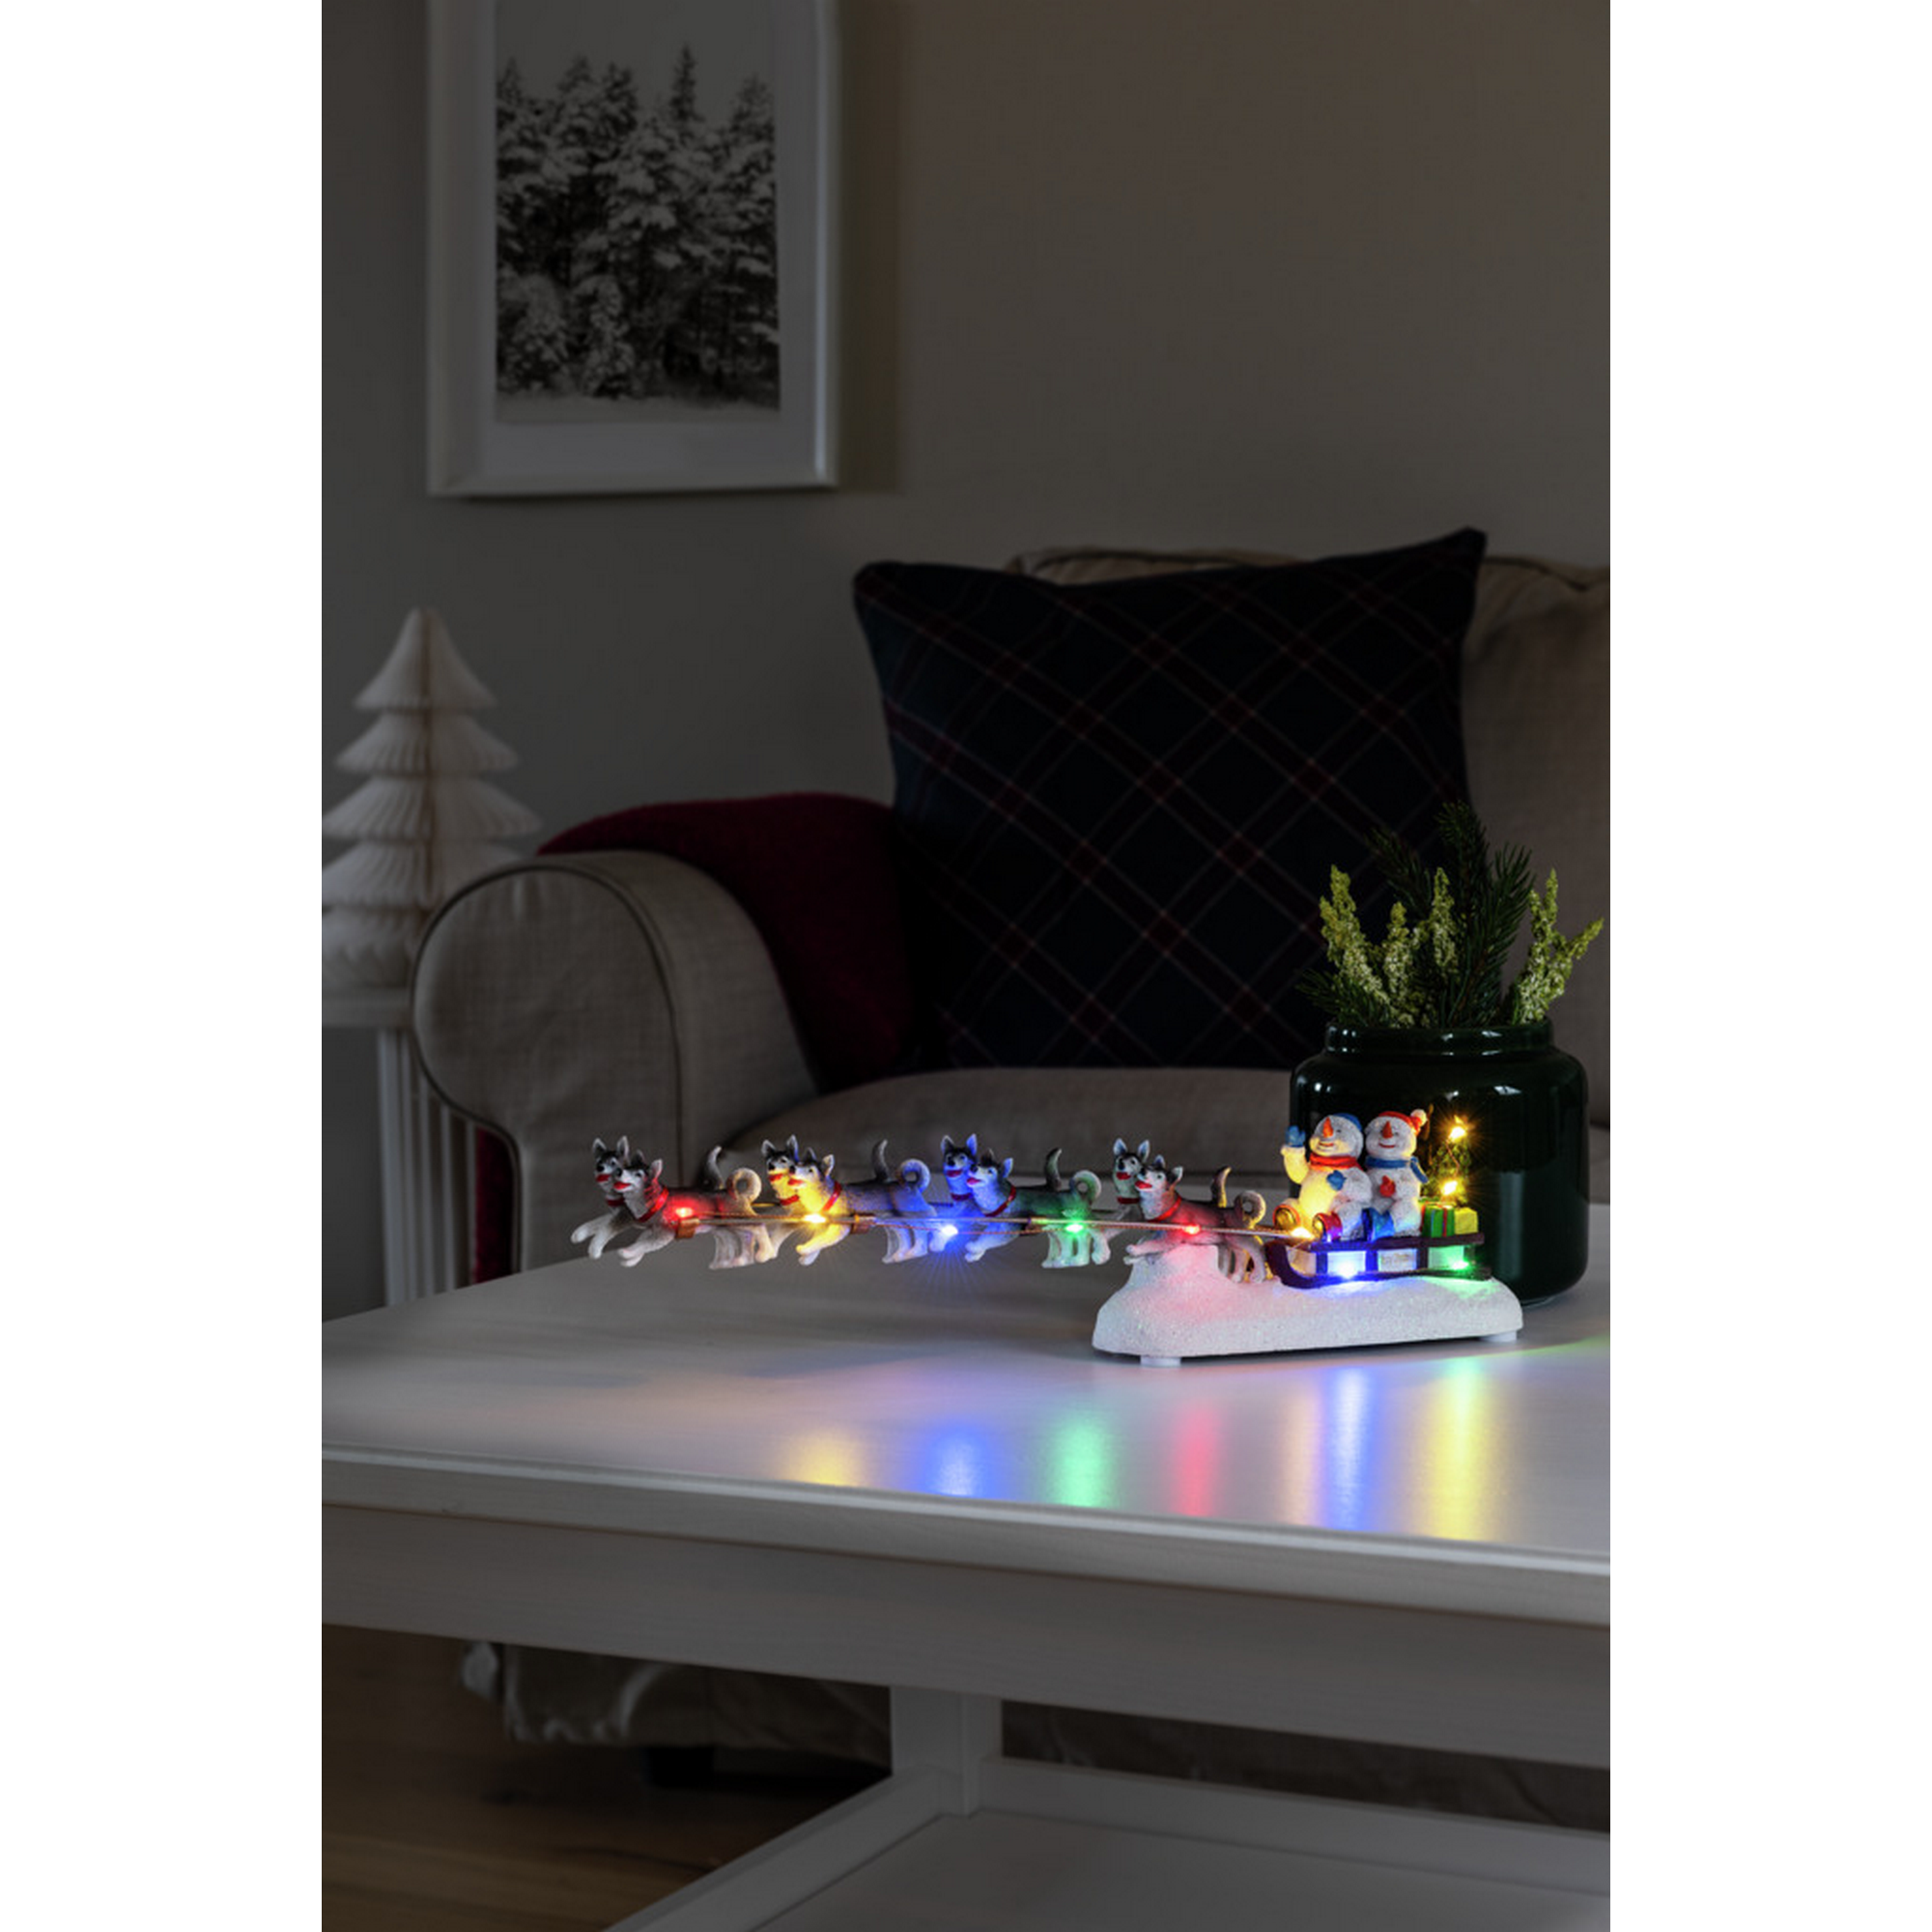 LED-Szenerie 'Schneemann mit Hundeschlitten' 10 LEDs bunt 41 x 10 cm + product picture